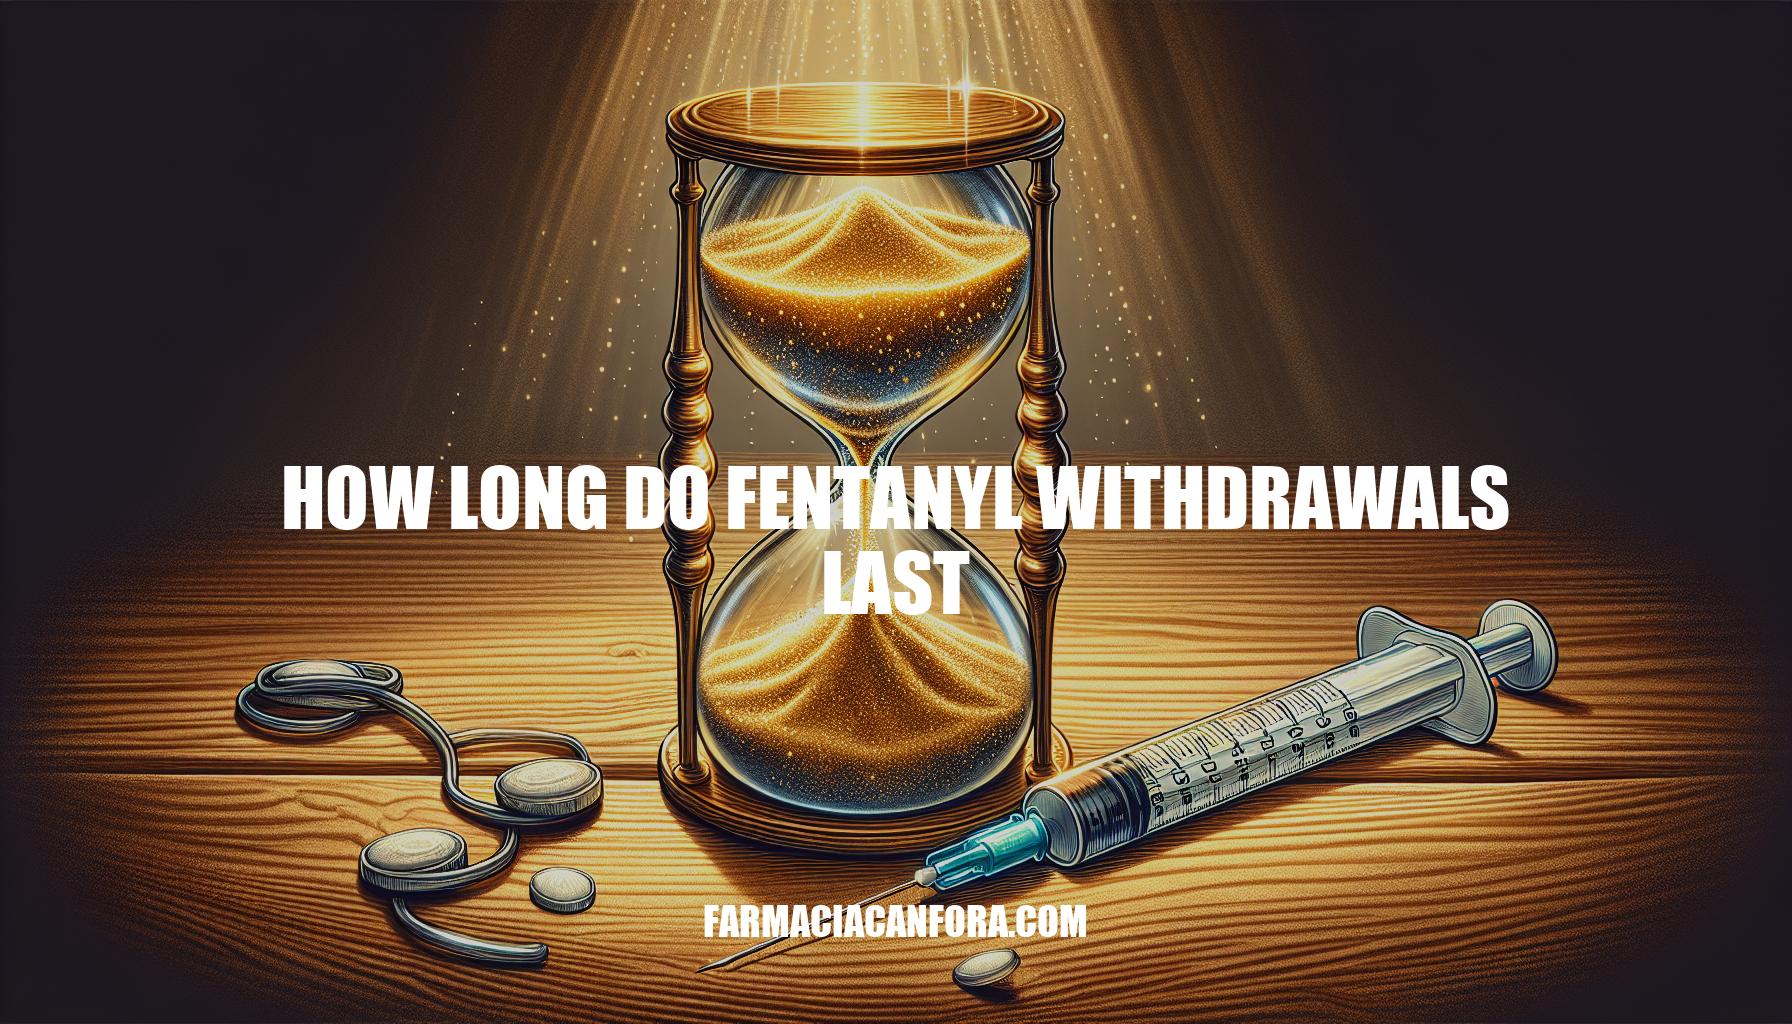 Understanding the Duration of Fentanyl Withdrawals: How Long Do Fentanyl Withdrawals Last